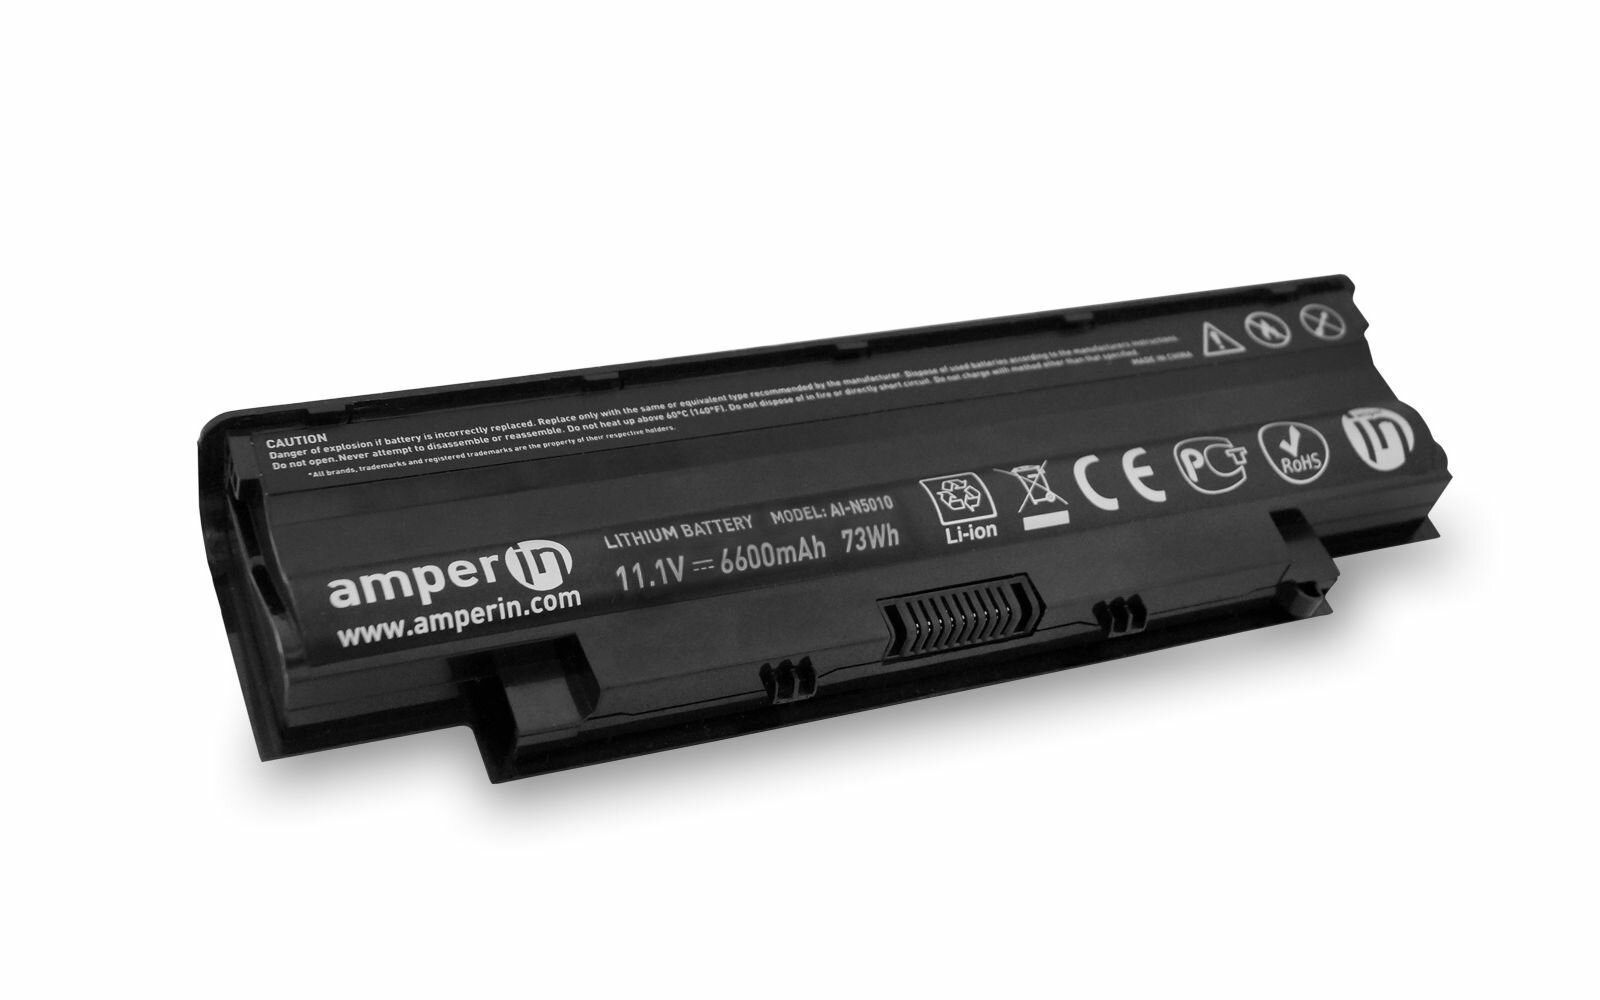 Аккумуляторная батарея усиленная Amperin для ноутбука Dell Inspiron N5110 (6600mAh)